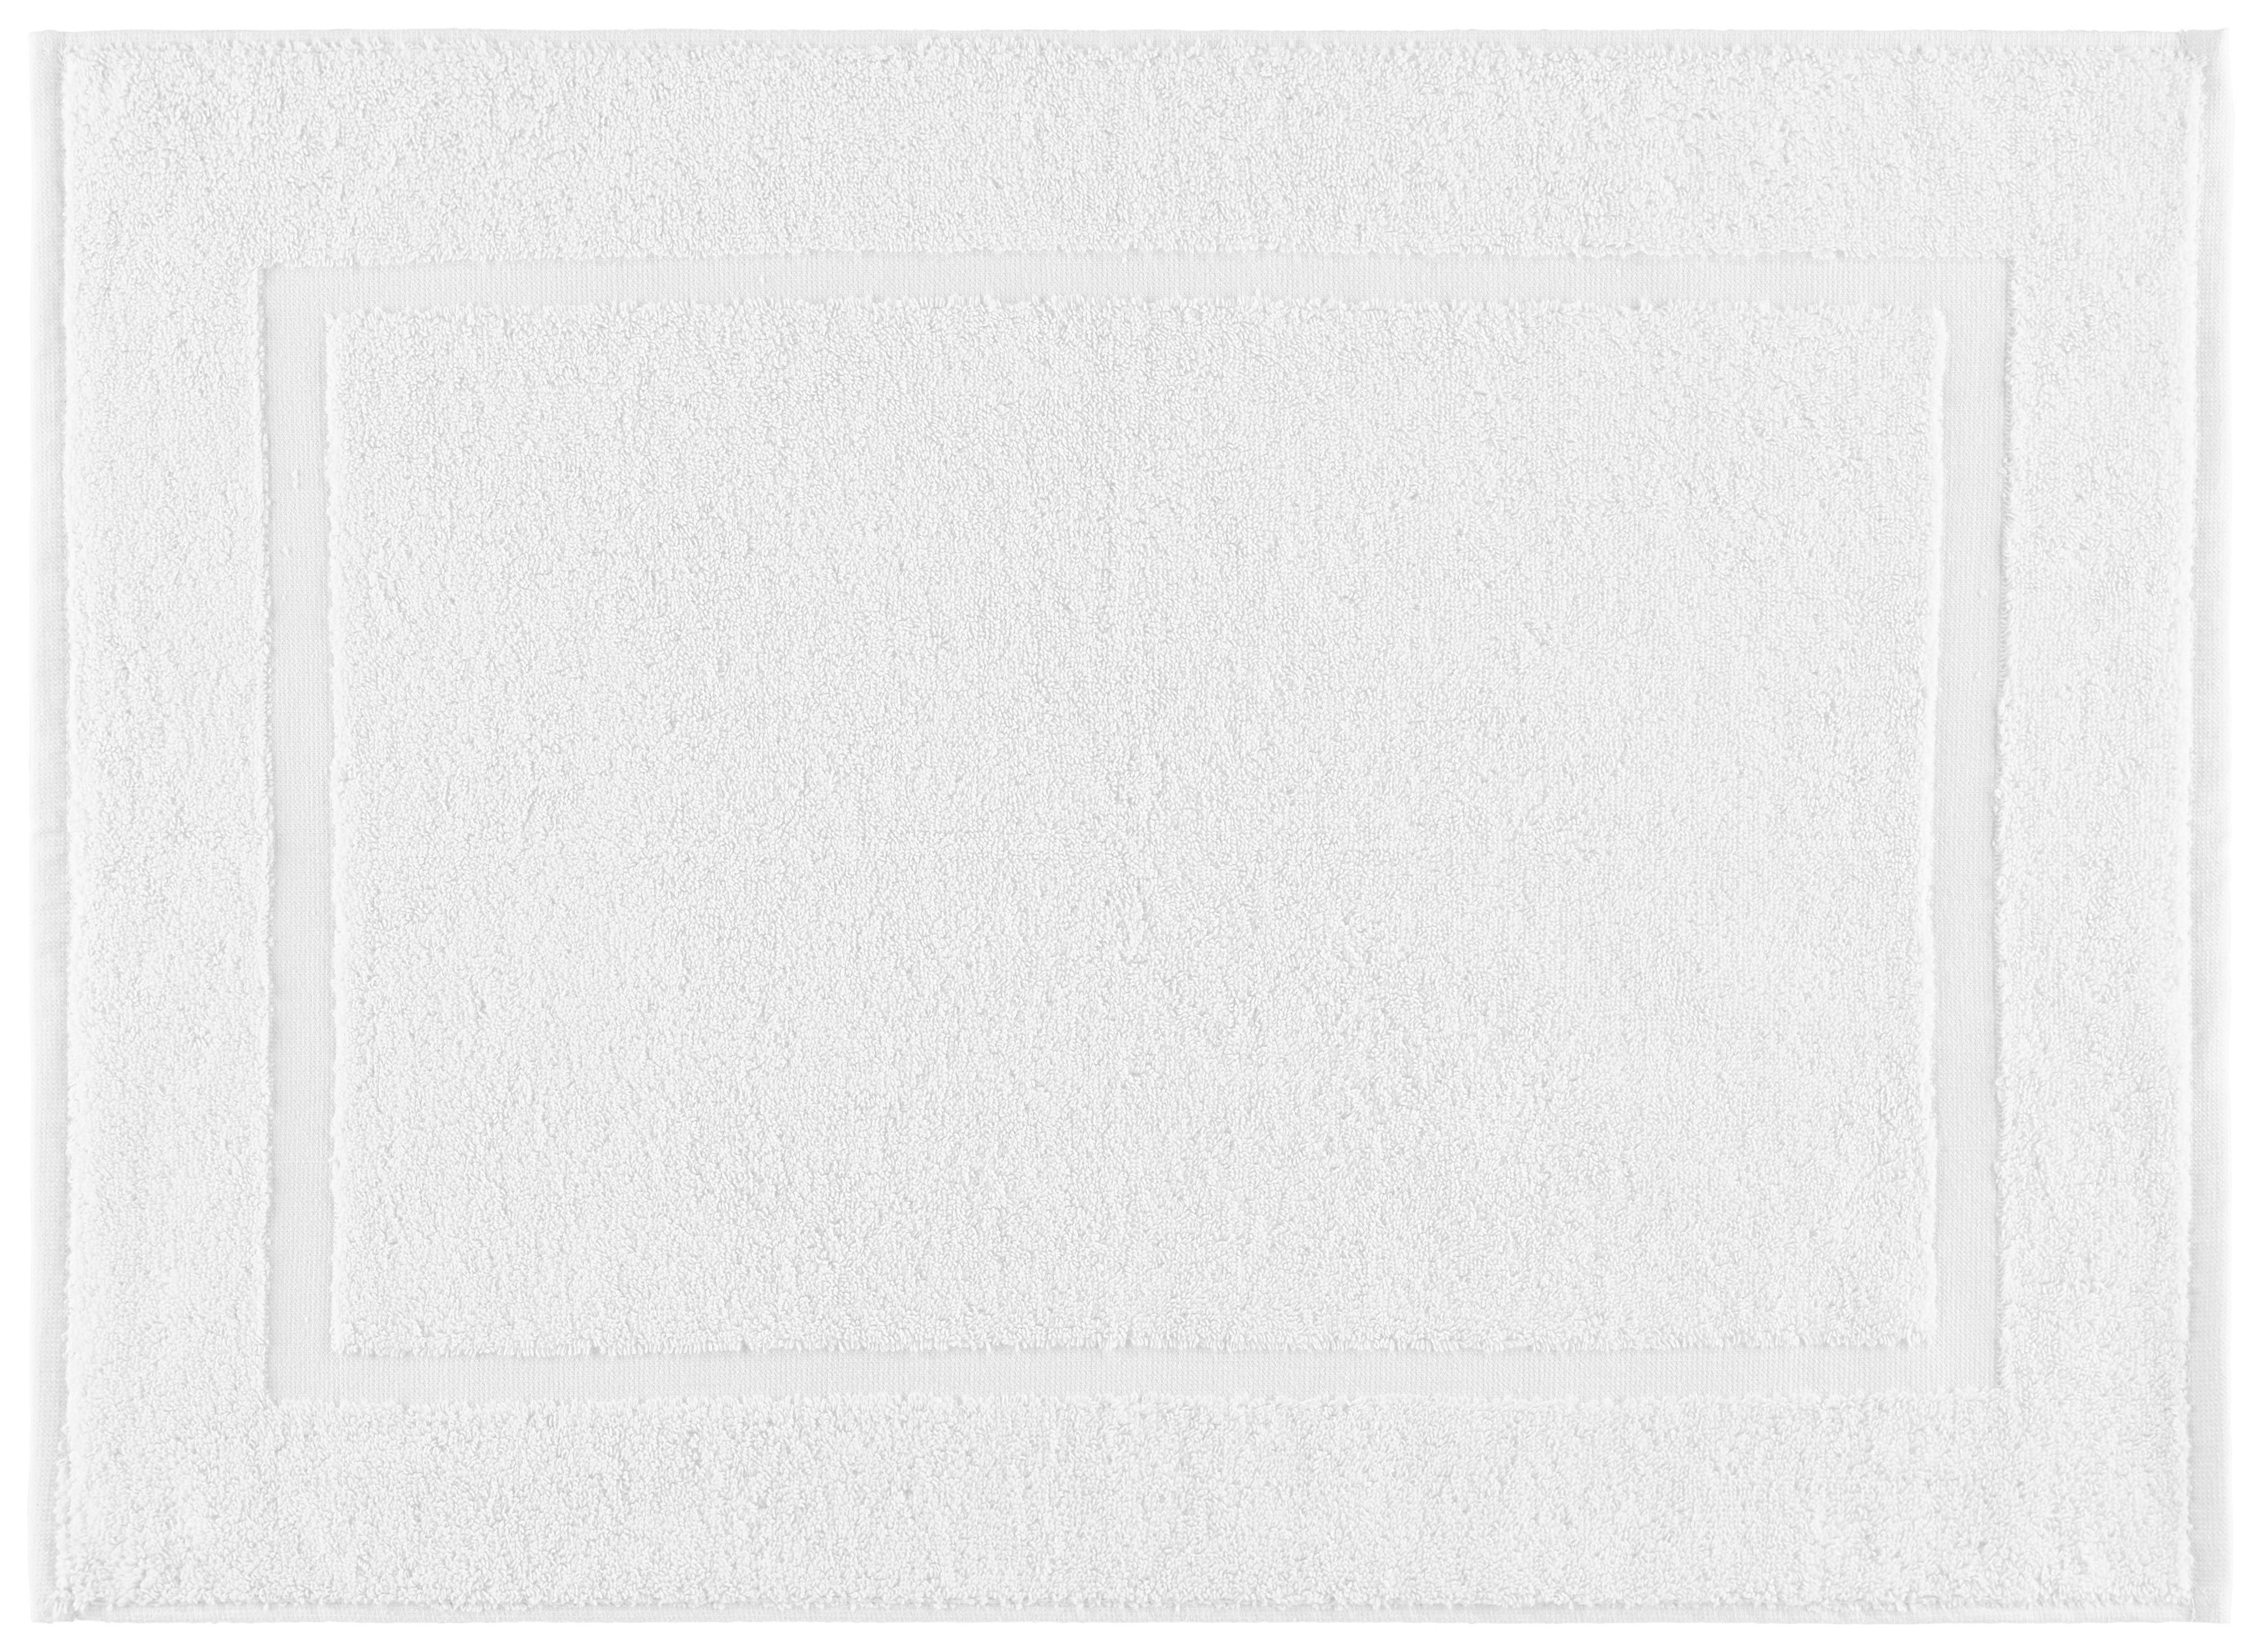 Badematte Melanie in Weiß ca. 50x70 cm - Weiß, Trend (50/70cm) - Modern Living